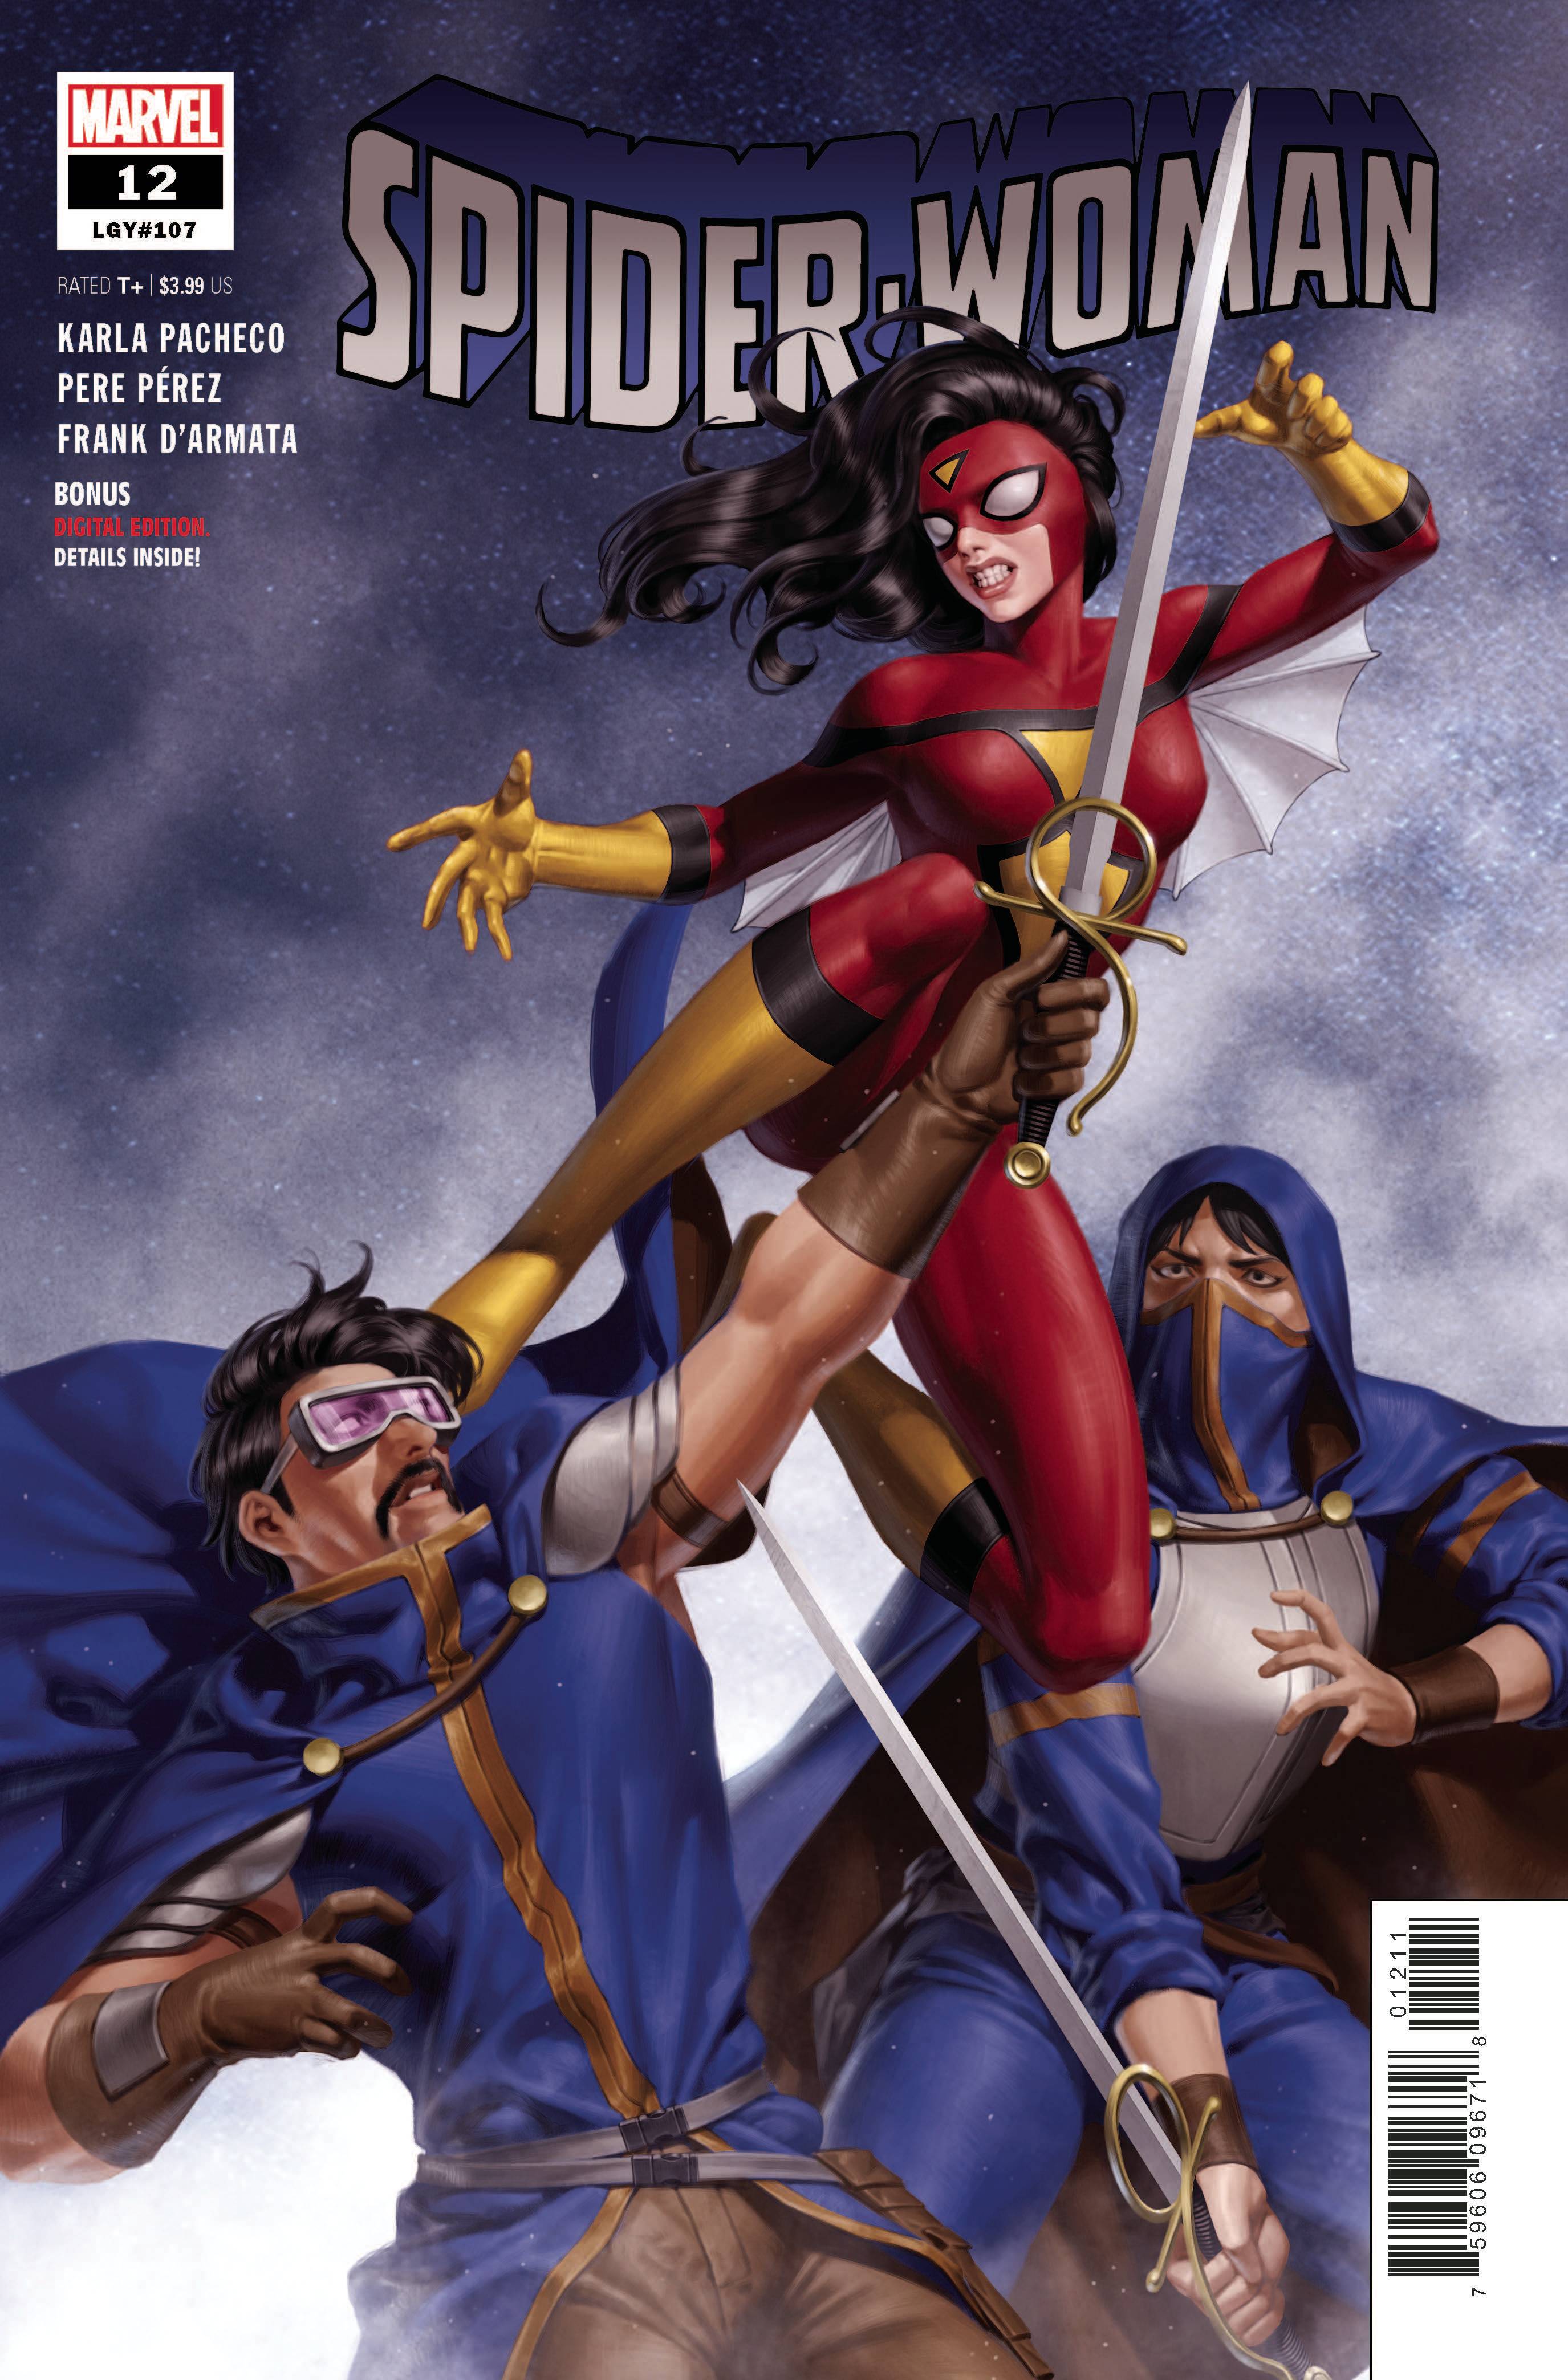 SPIDER-WOMAN #12 | L.A. Mood Comics and Games